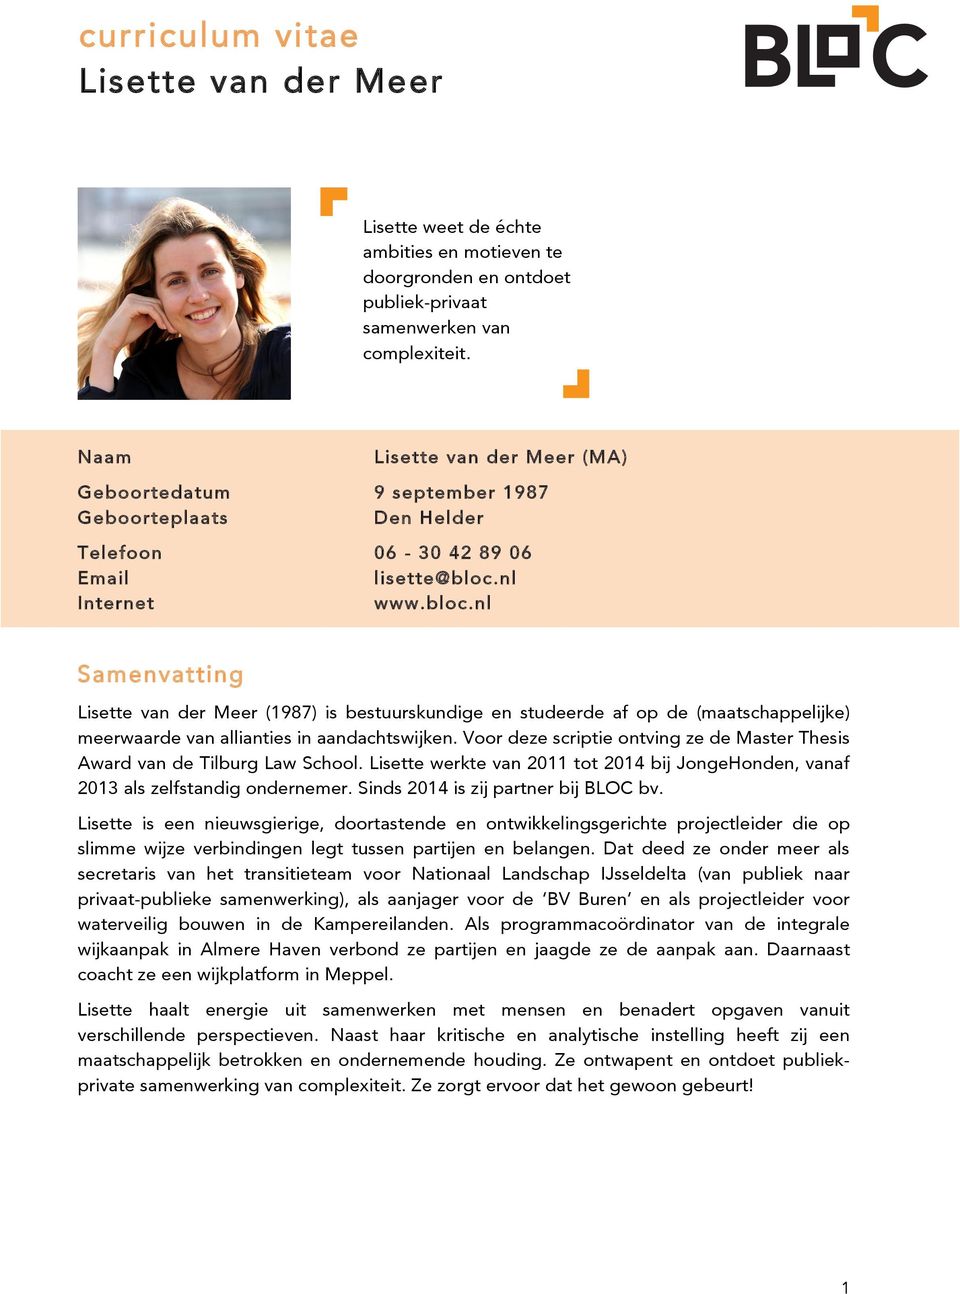 nl Internet www.bloc.nl Samenvatting Lisette van der Meer (1987) is bestuurskundige en studeerde af op de (maatschappelijke) meerwaarde van allianties in aandachtswijken.